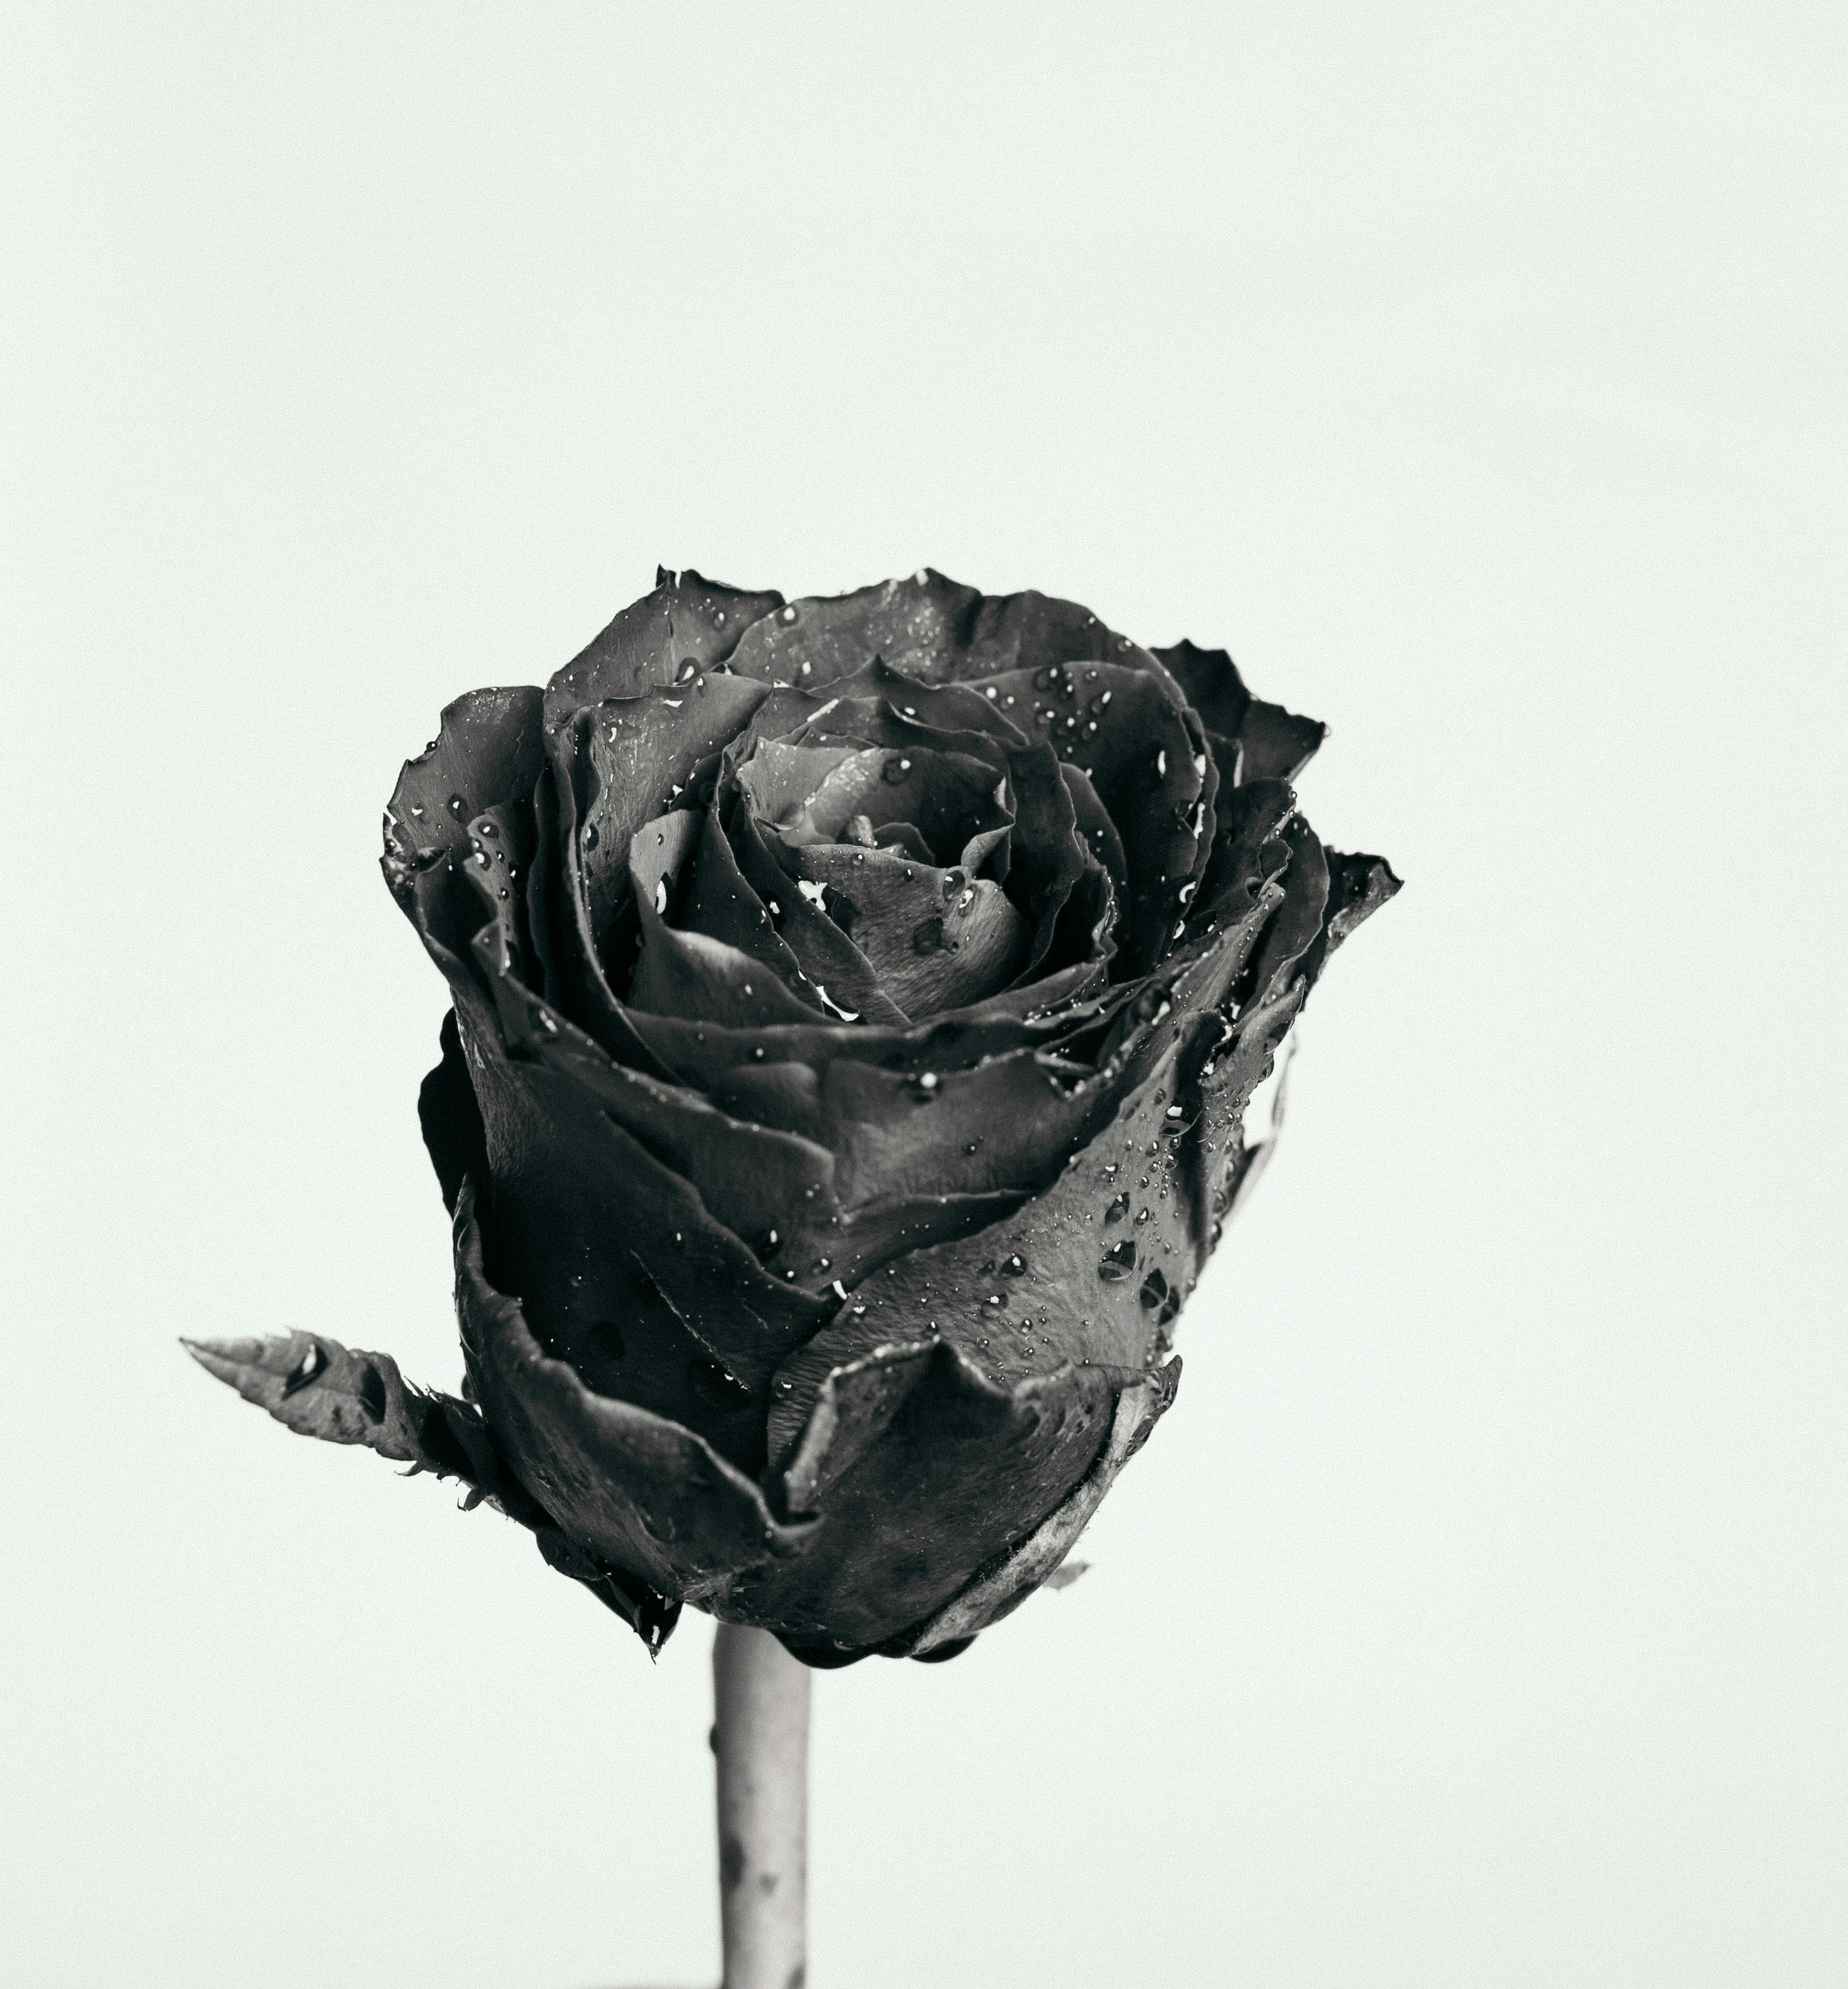 Trọn Bộ] hình ảnh hoa hồng đen – loài hoa bí ẩn và quyến rũ | Hoa hồng đen,  Hoa hồng đẹp, Hoa hồng